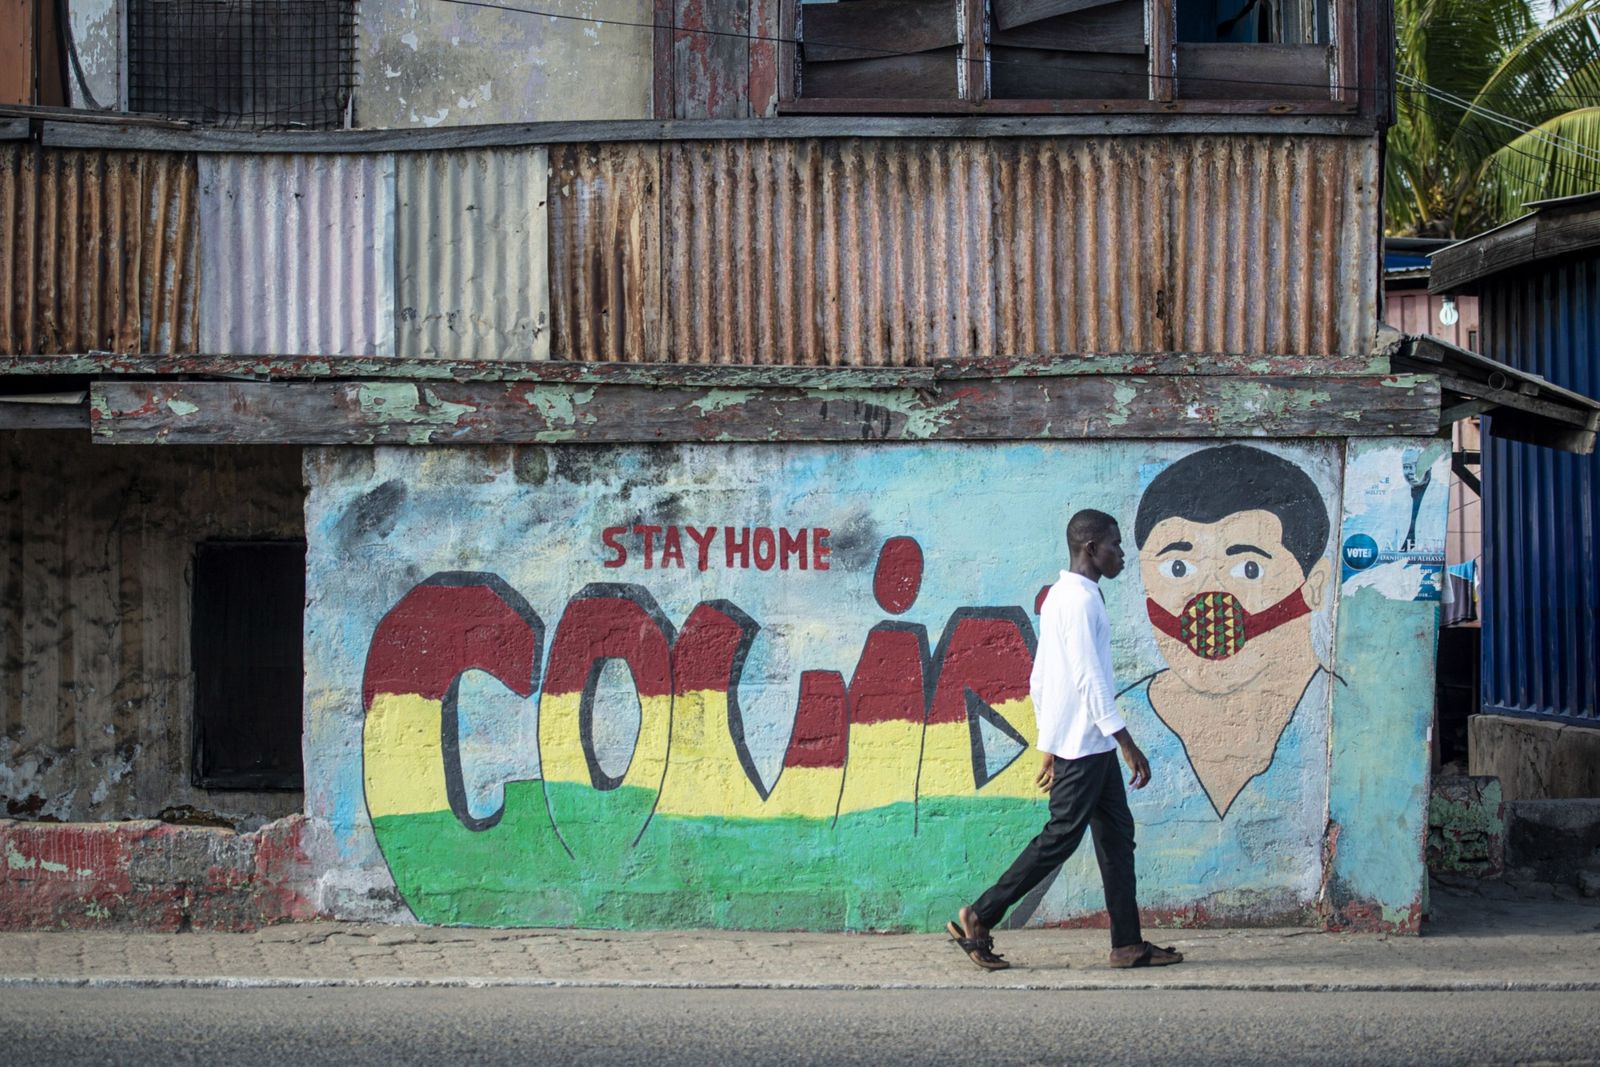 جدارية للوقاية من فيروس كورونا في أكرا عاصمة غانا - 23 أكتوبر 2020 - Bloomberg